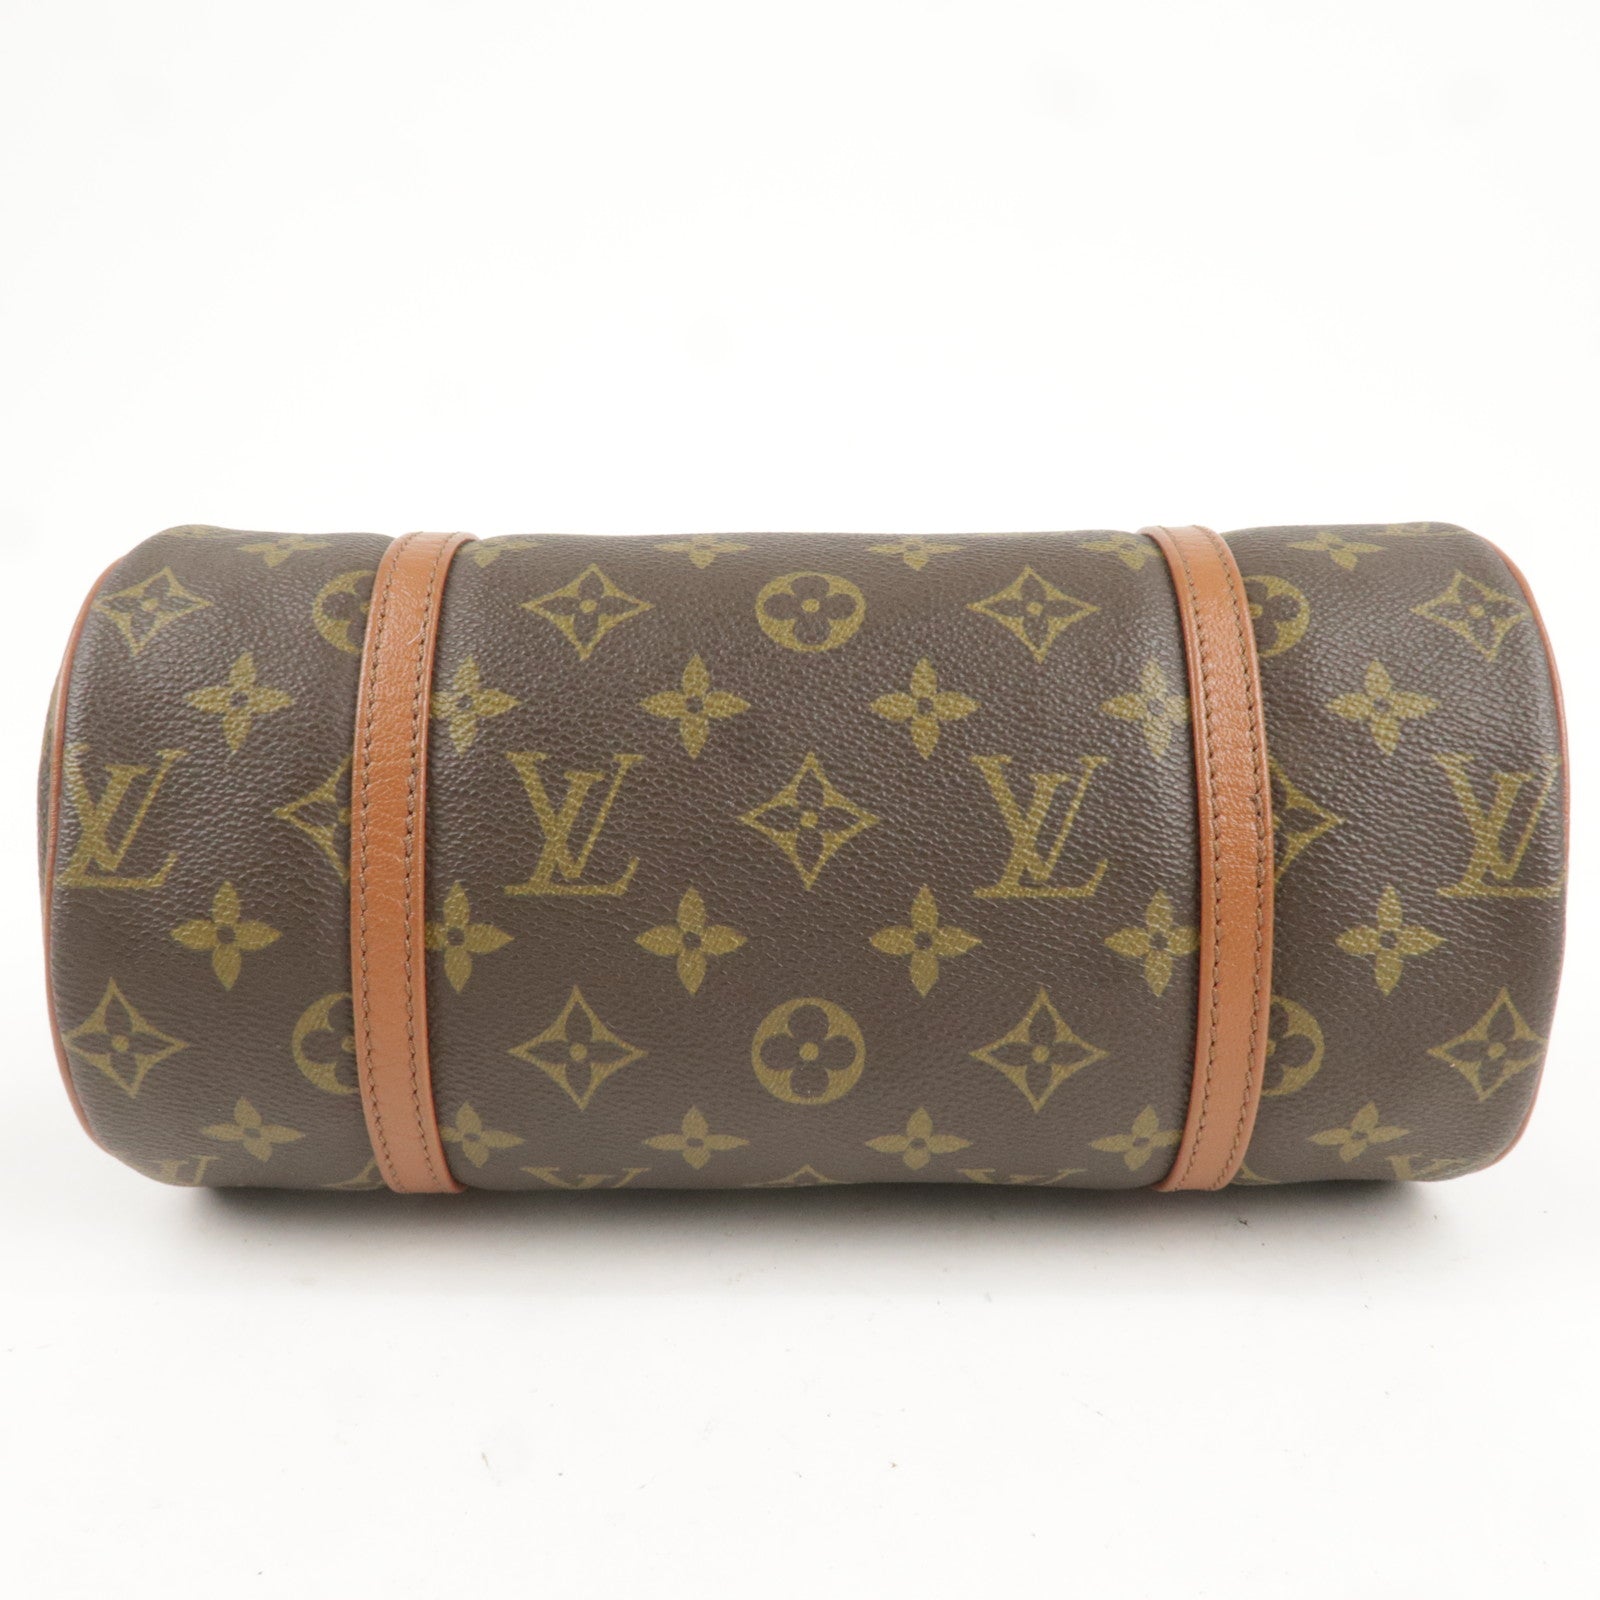 Louis Vuitton Papillon Handbag Authentic Vintage With Original